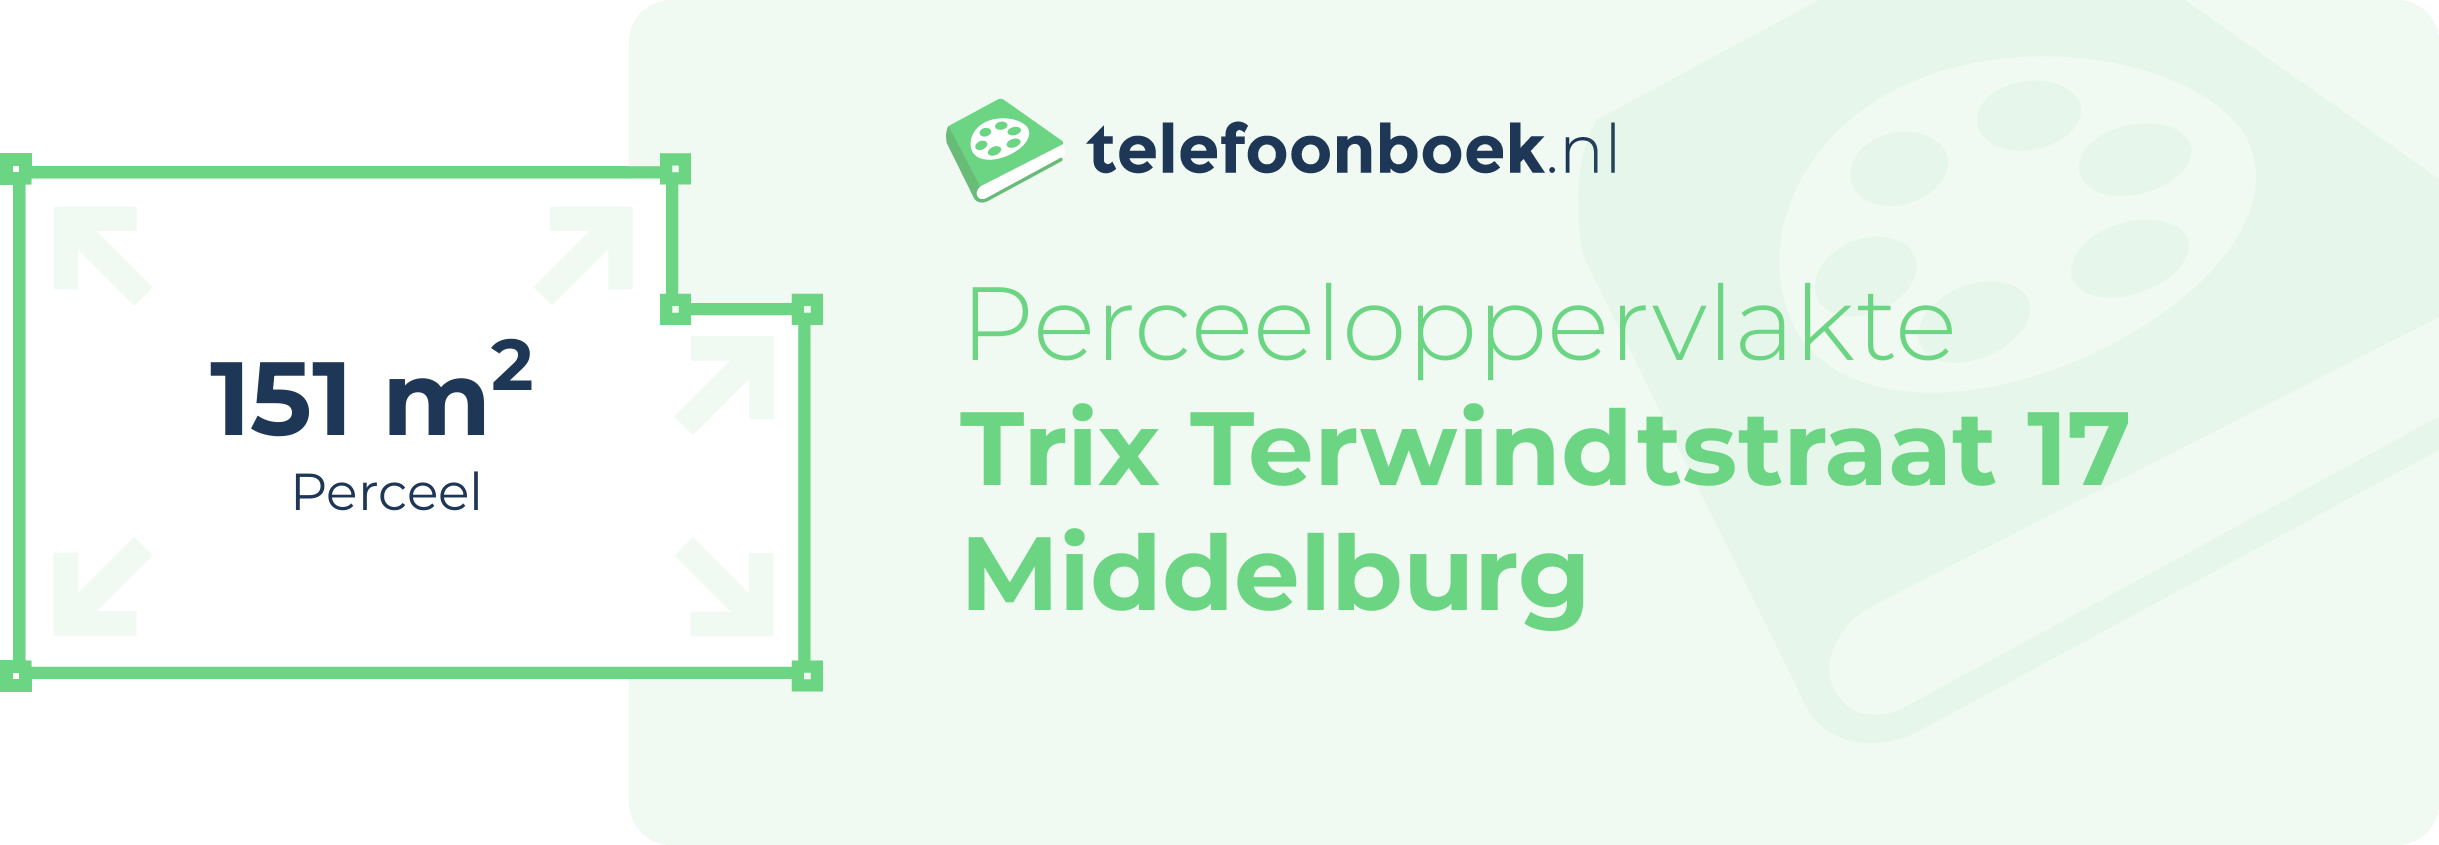 Perceeloppervlakte Trix Terwindtstraat 17 Middelburg